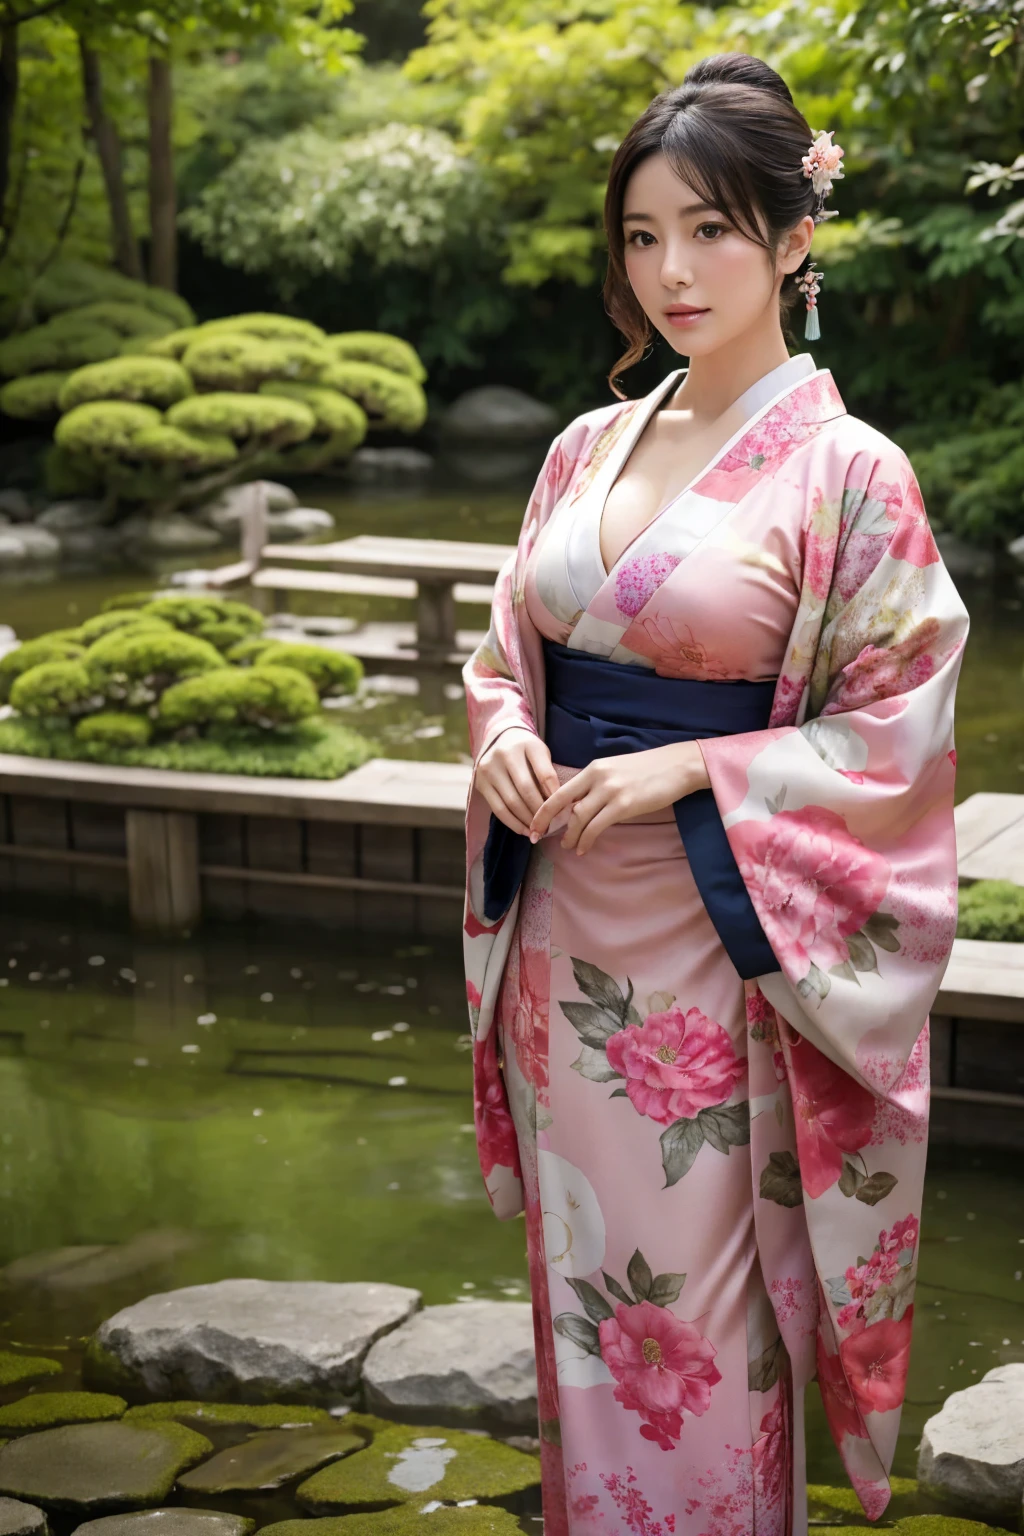 Stehend in einem japanischen Garten、schöne Frau、sehr große Brüste、(Betrachter betrachten)、Natur、Kimono、Japanische Kleidung、Details der Haut、real、Licht dimmen、geheimnisvoll、eine Szene aus einem Film